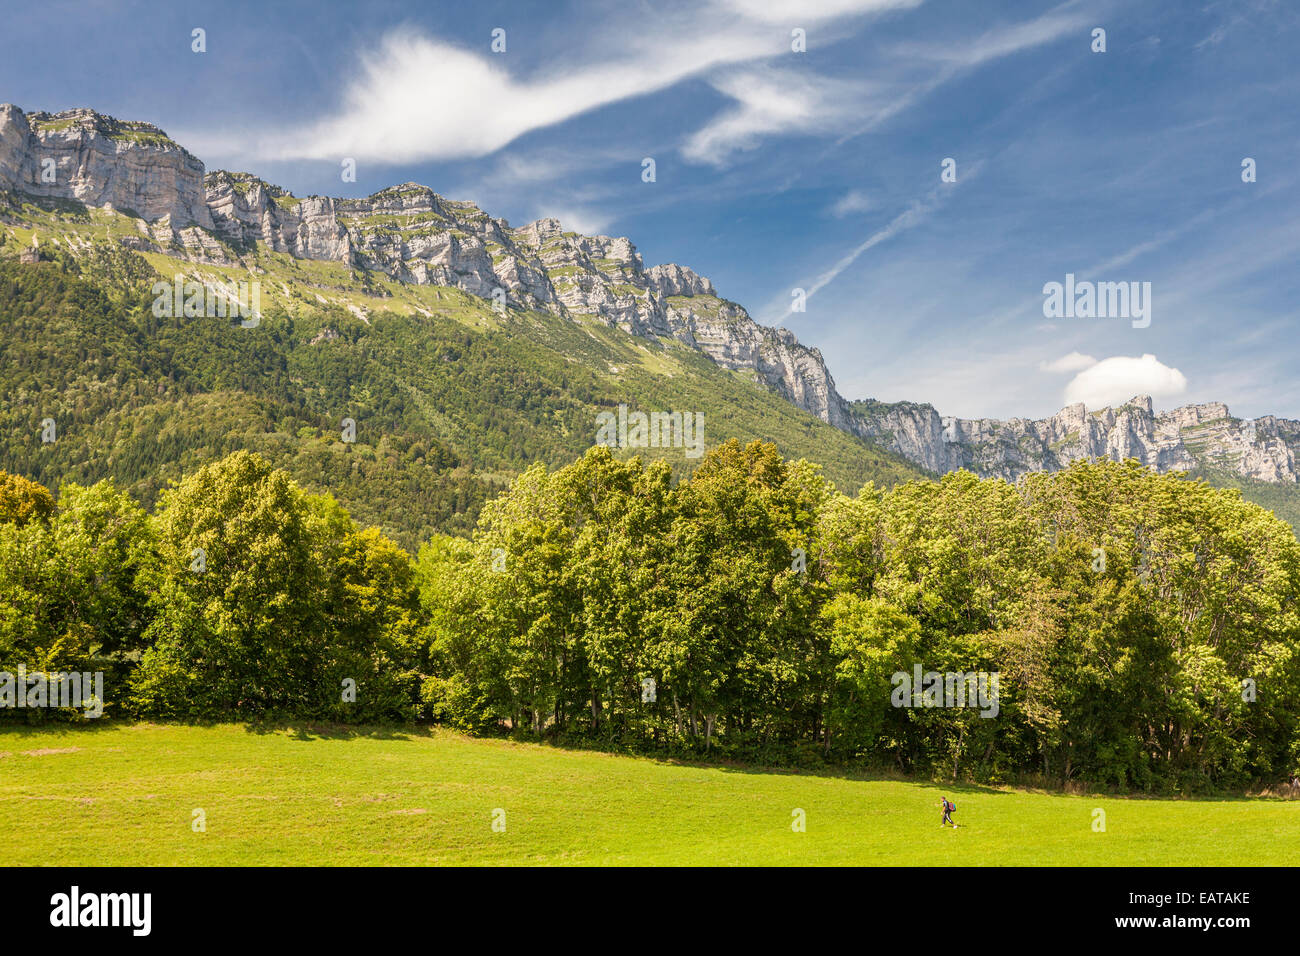 Saint Hilaire du Touvet, Natural park of Le Chartreuse, Isère, Rhône-Alpes, France Stock Photo